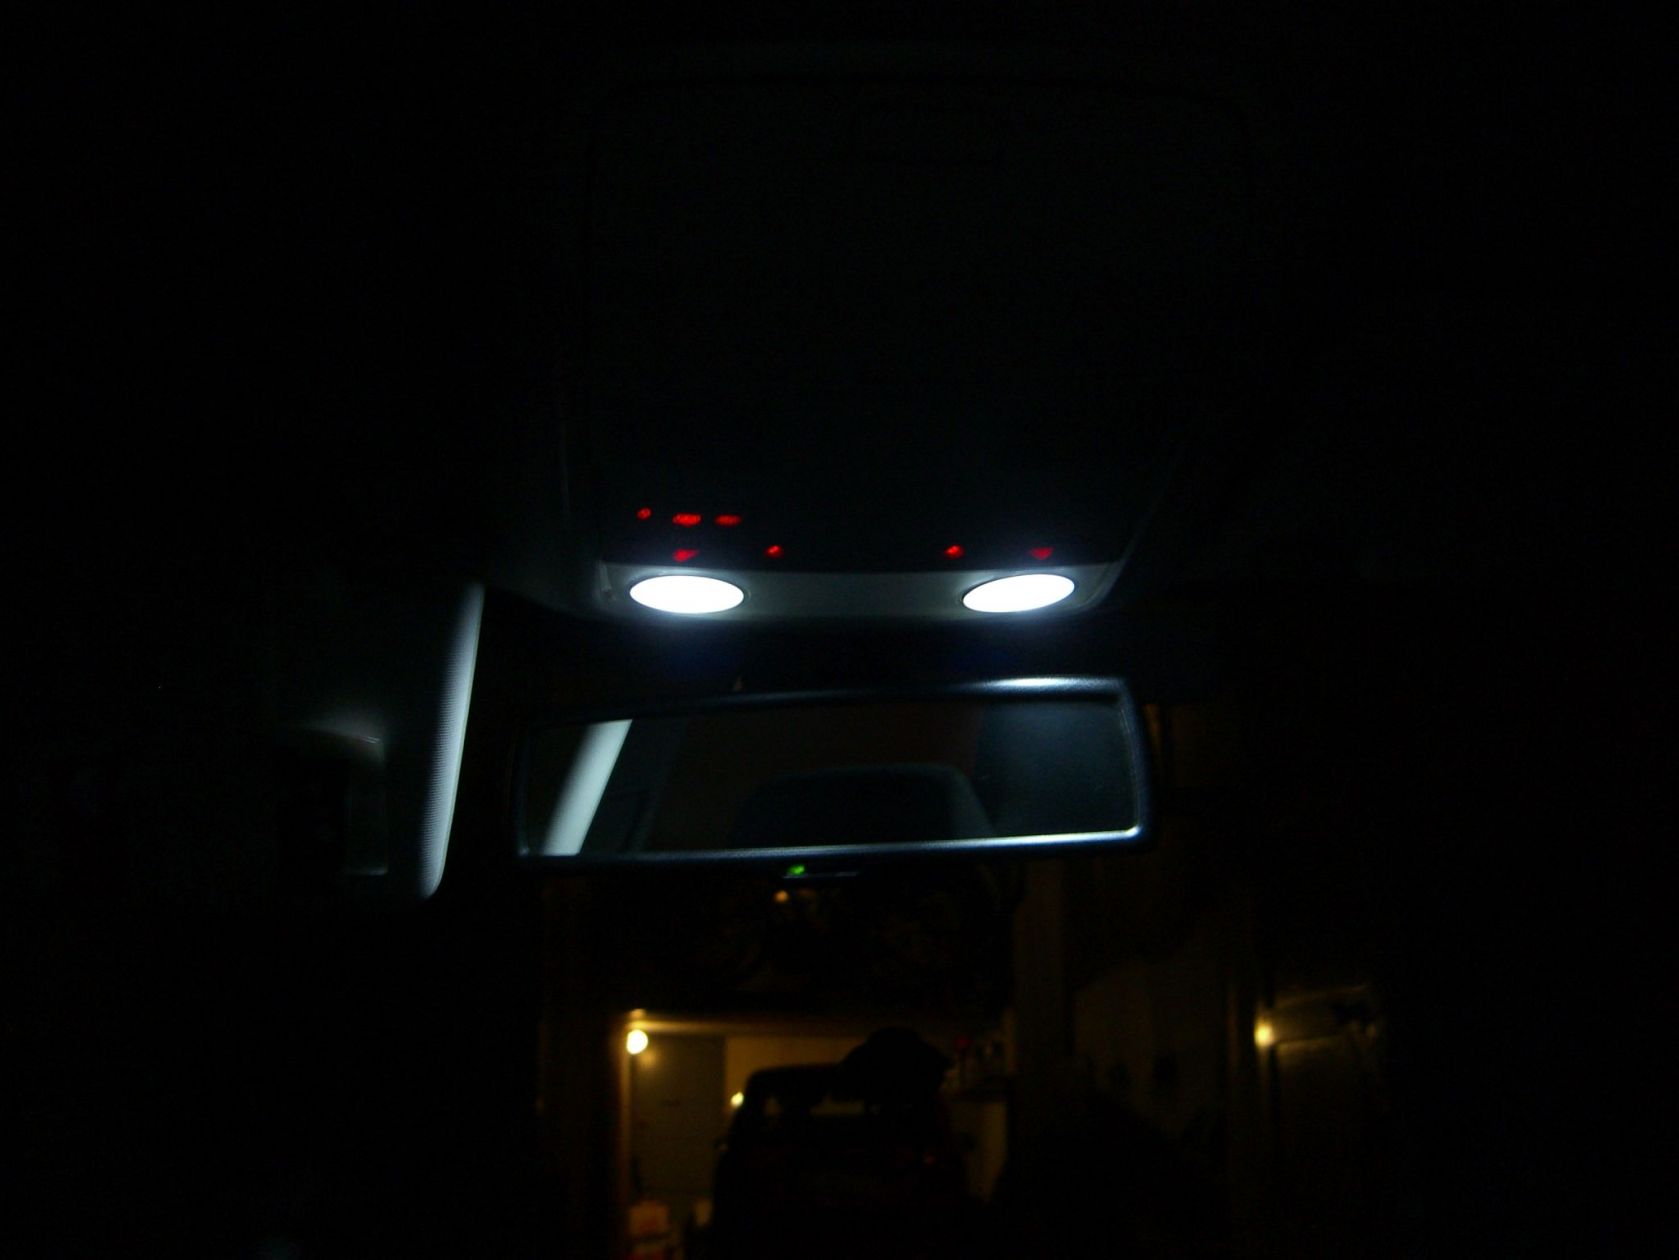 plafo ant
Plafoniera anteriore a LED della LEDMANIA
